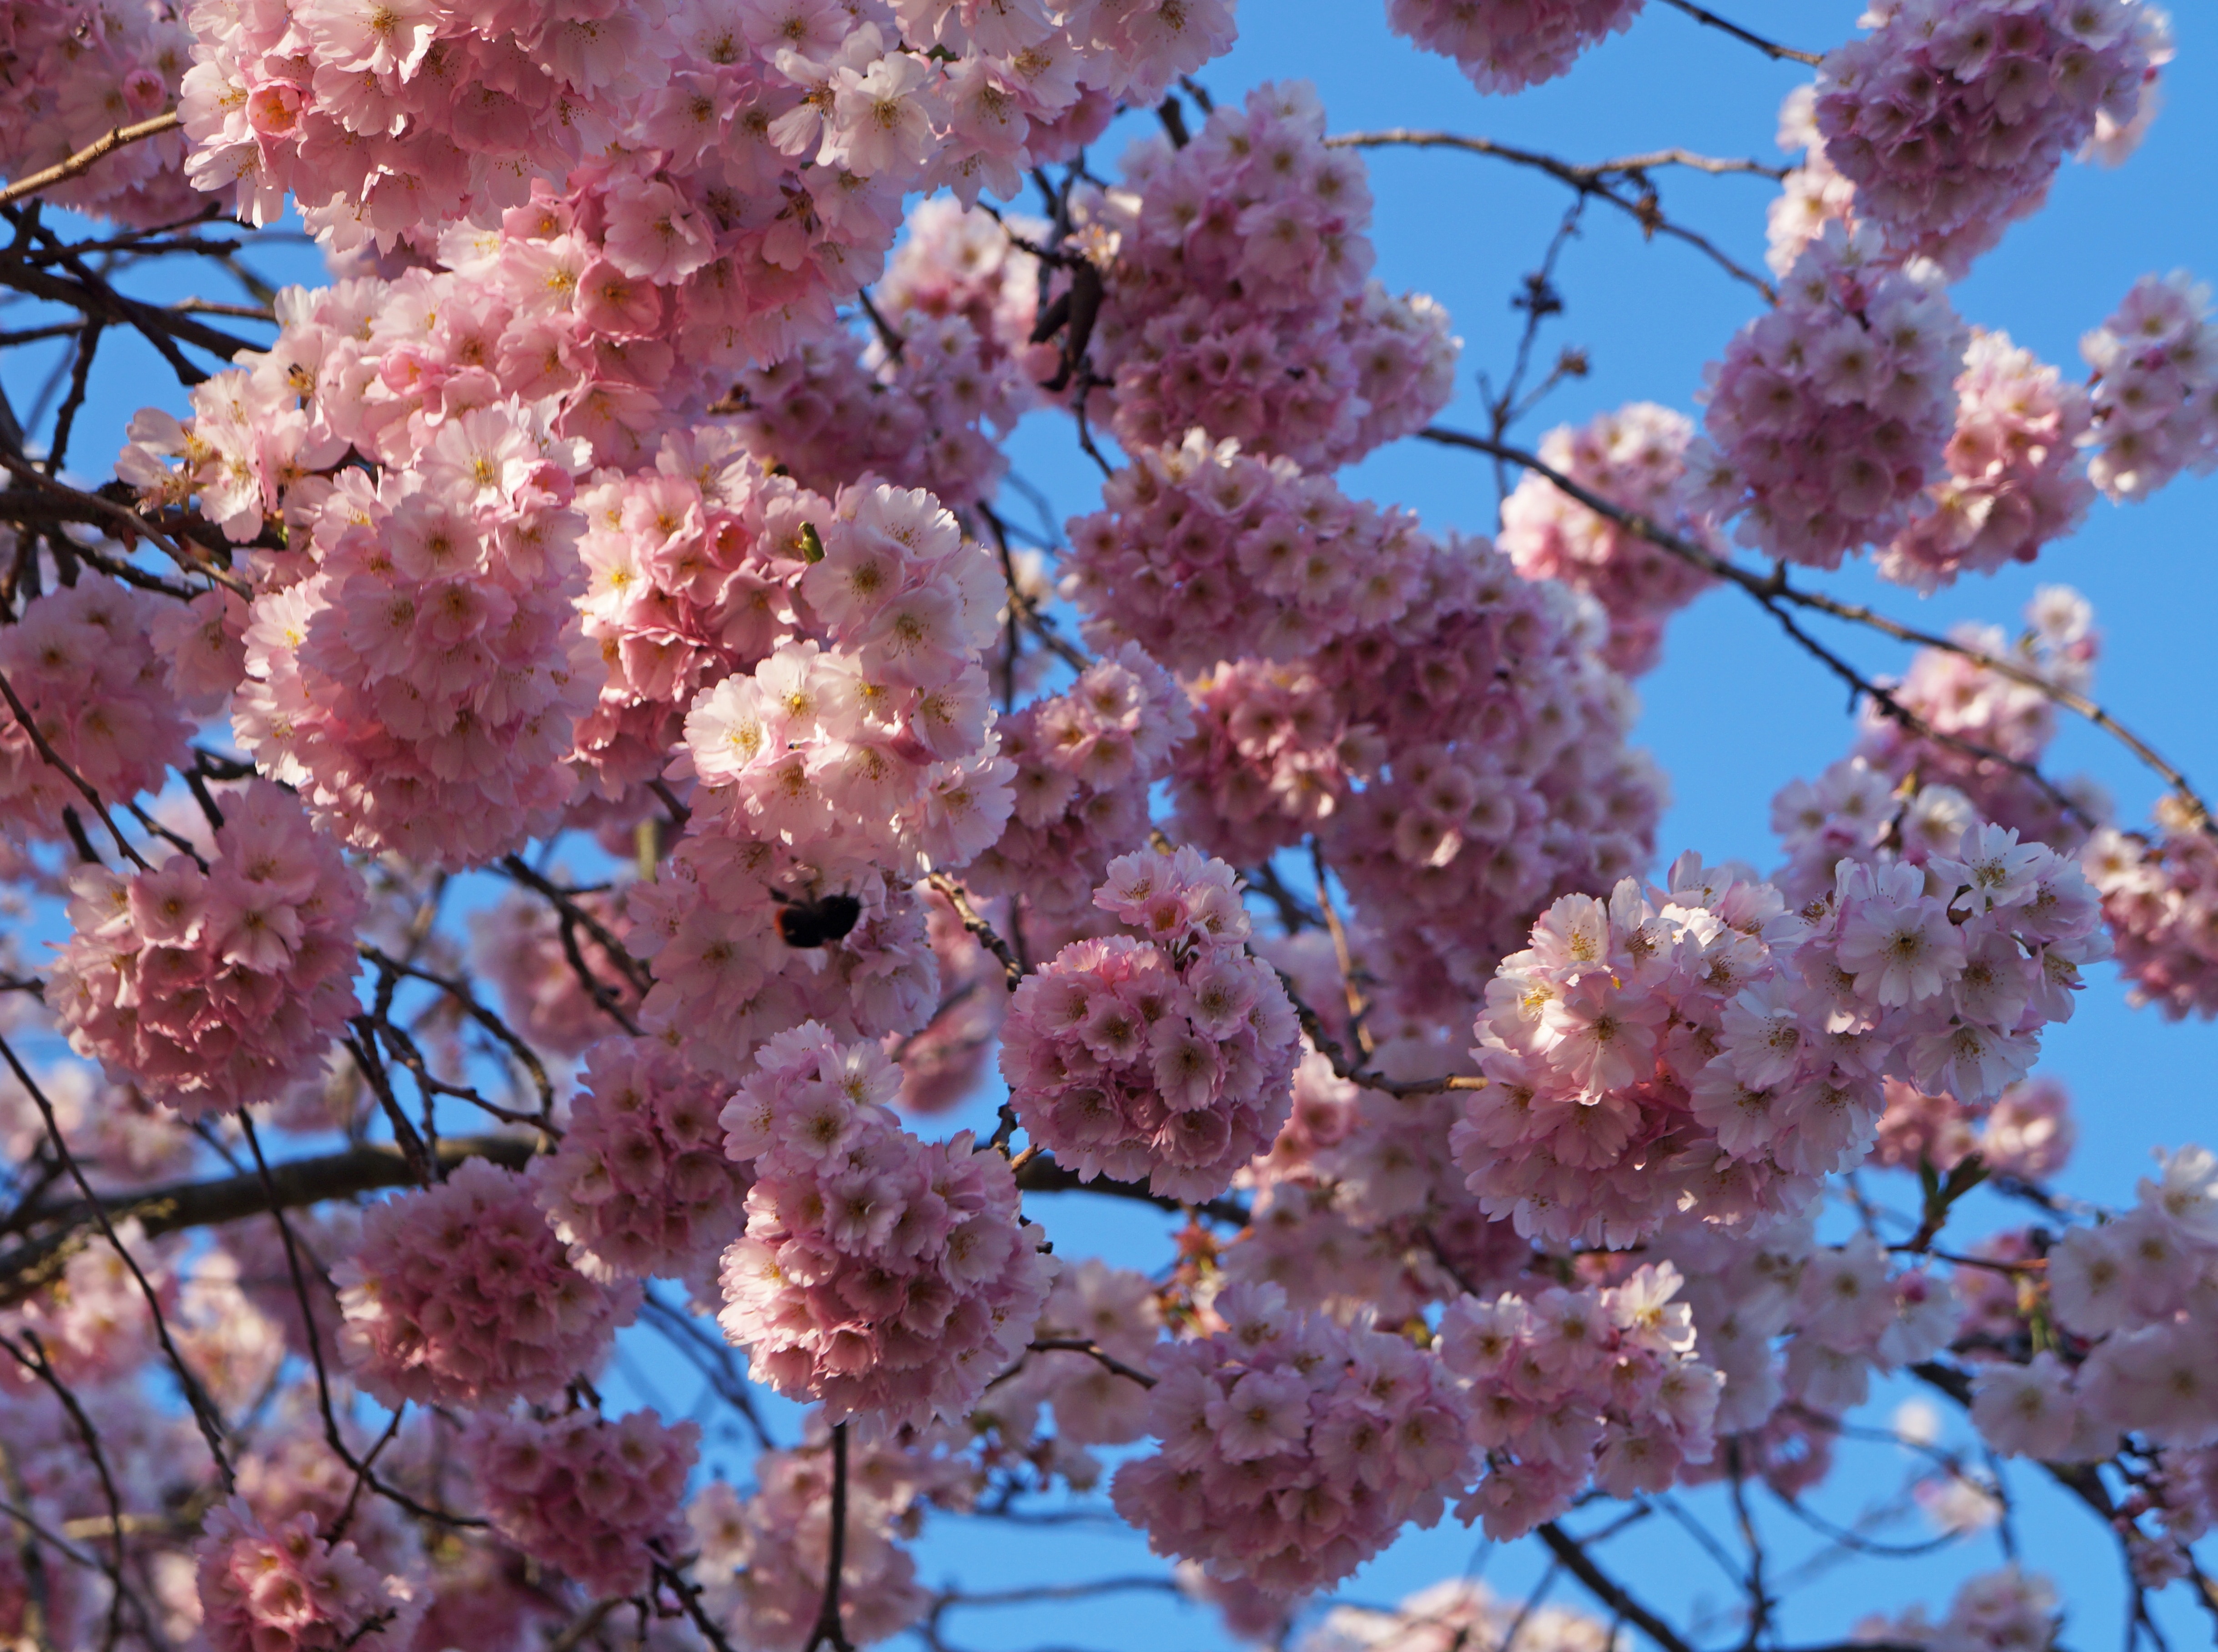 bloomed cherry blossoms hitting sunlight